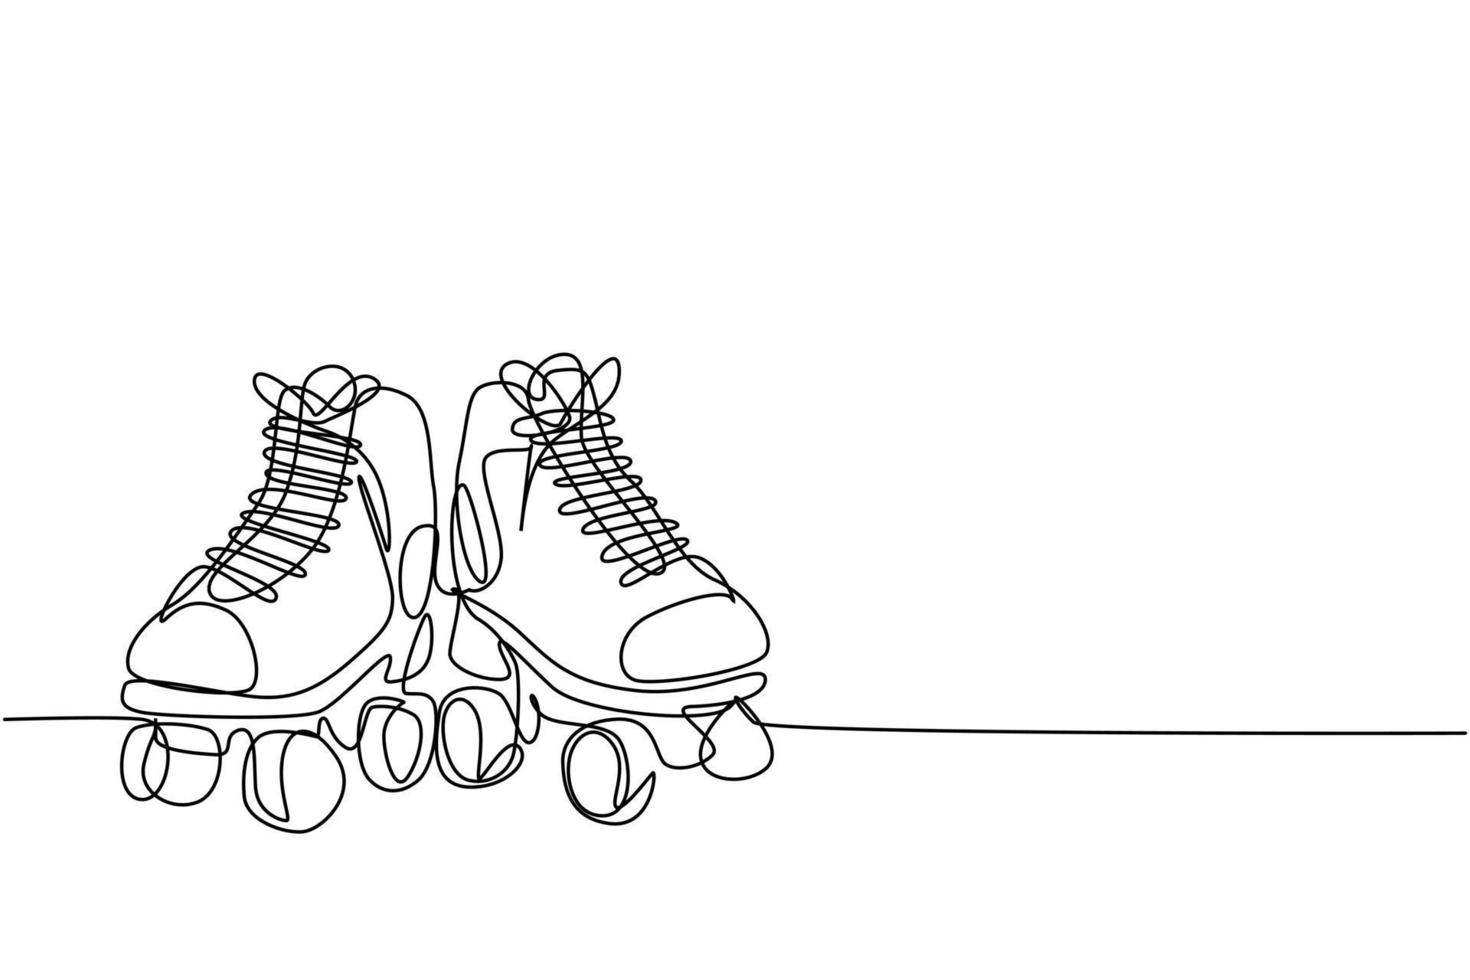 único par de desenho de linha contínua de velhas sapatilhas de patins de quadrilátero de plástico retrô. vintage clássico conceito de esporte extremo desenho de uma linha desenho de ilustração vetorial vetor